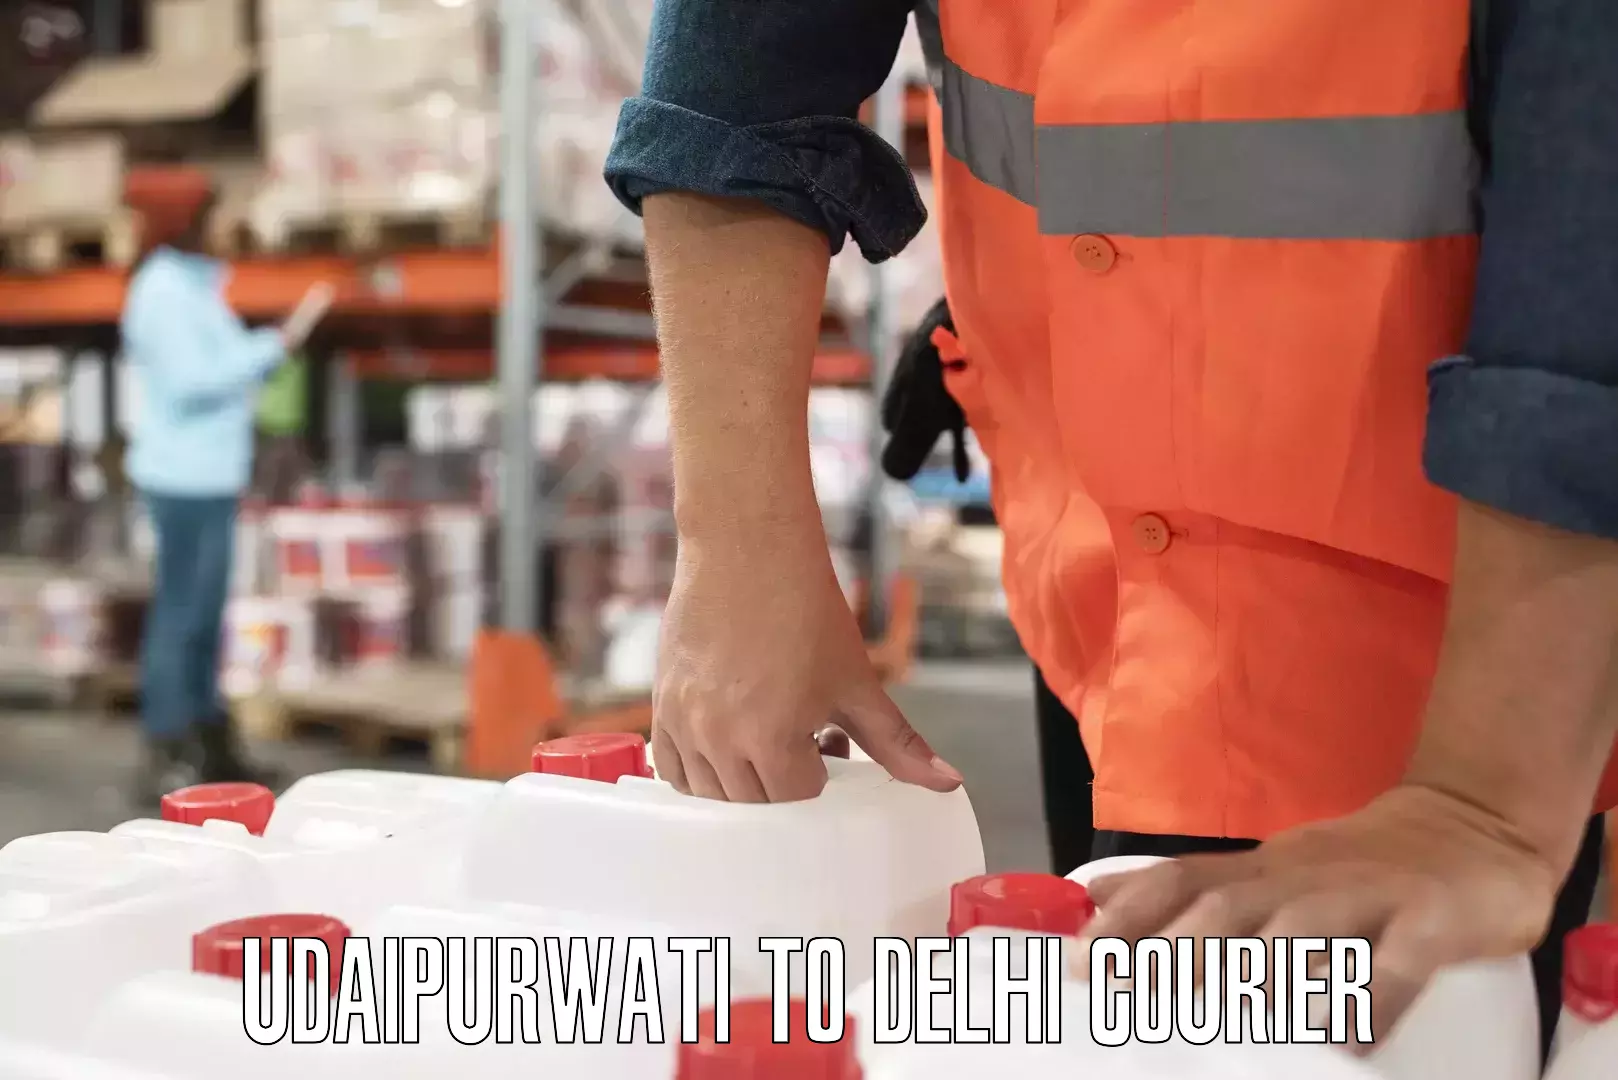 24-hour courier services Udaipurwati to Delhi